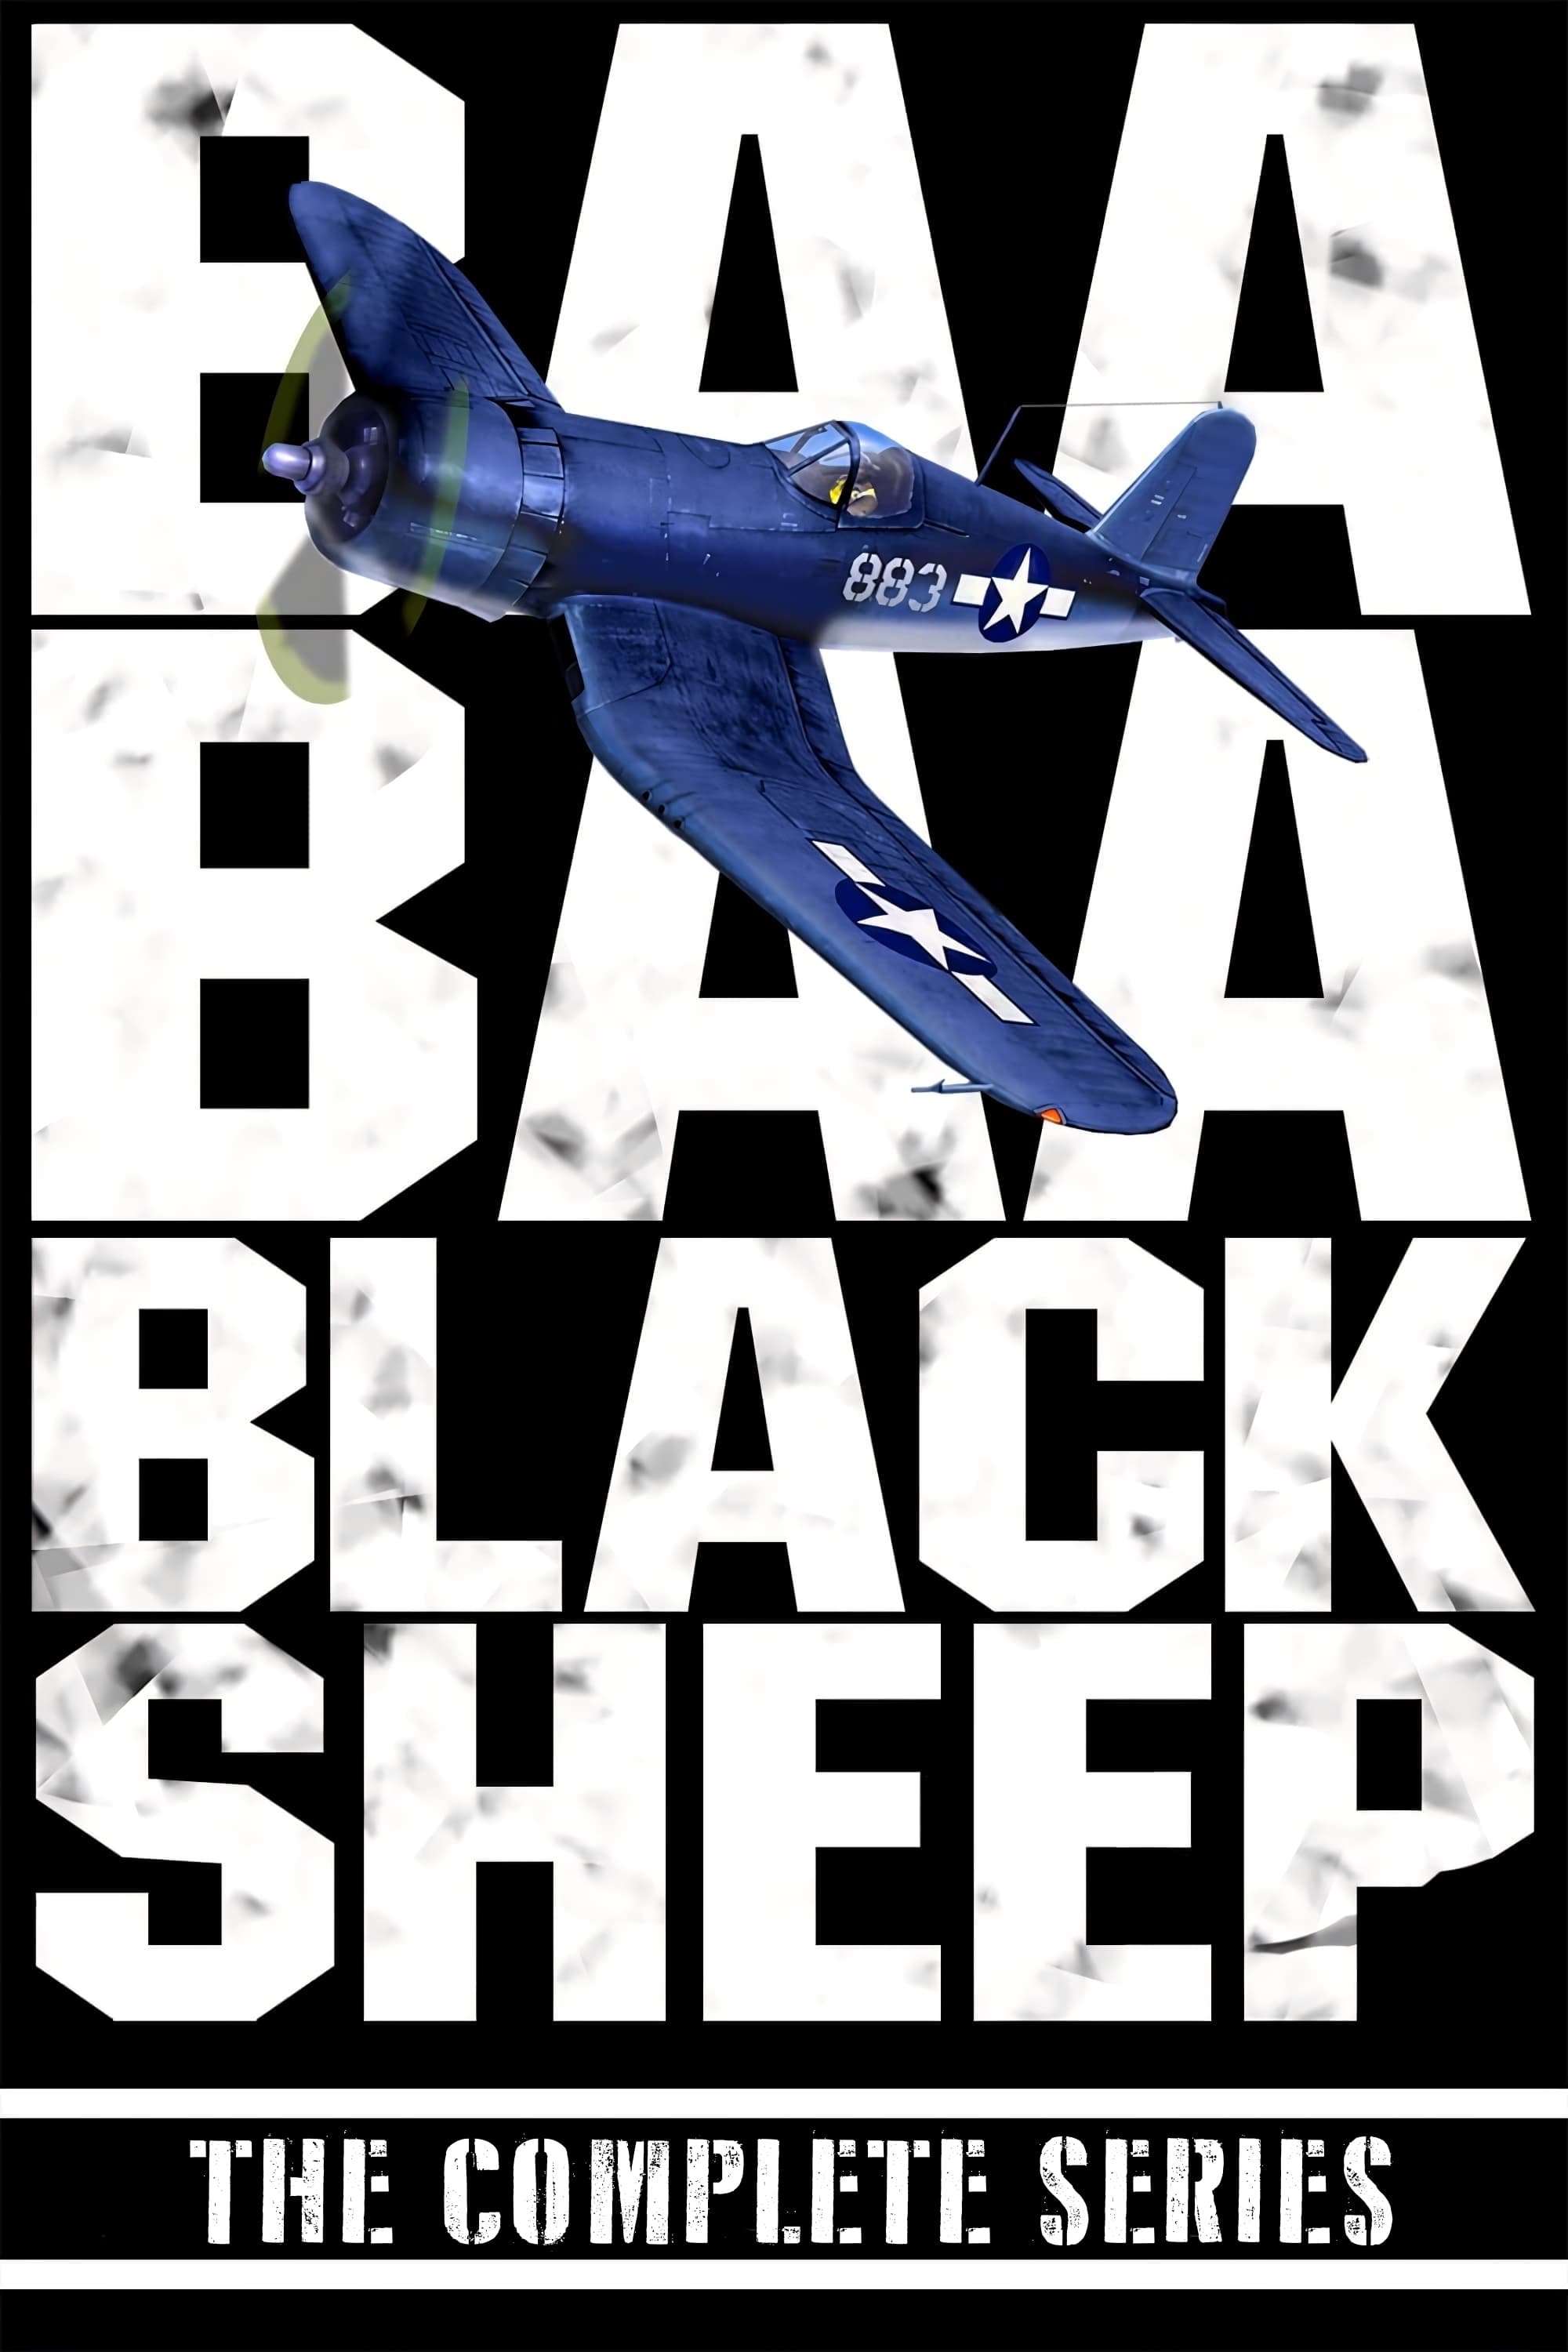 Baa Baa Black Sheep (1976)